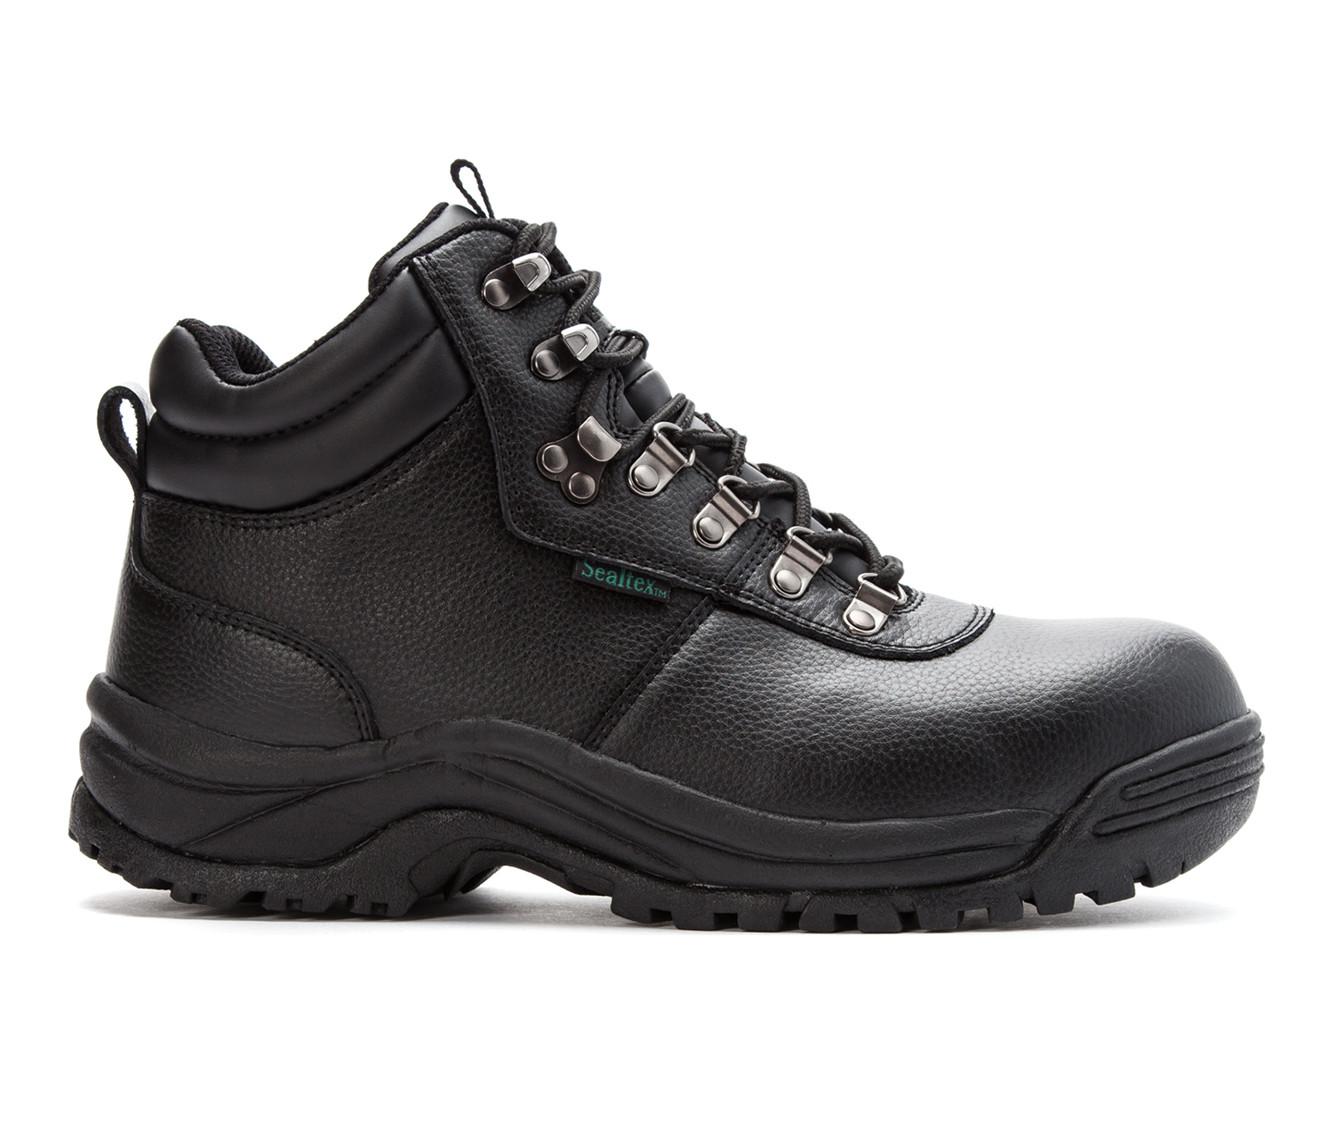 Men's Propet Shield Walker Waterproof Work Boots